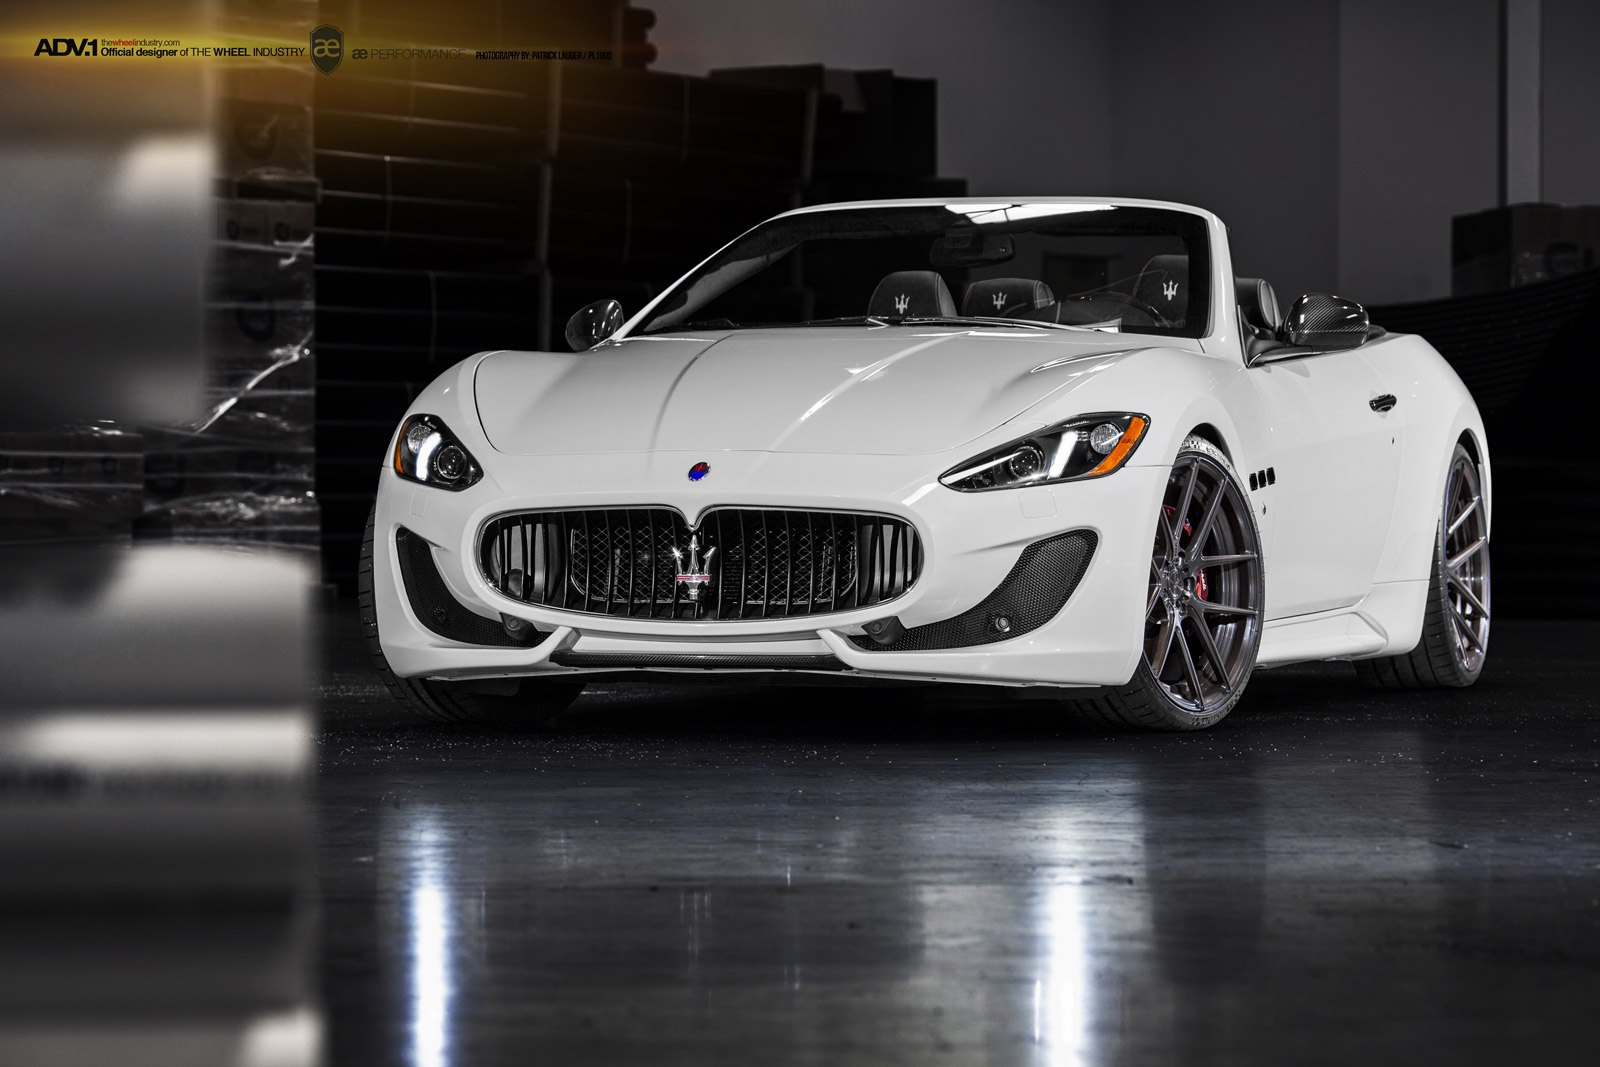 White Convertible Maserati Granturismo with Carbon Fiber Accents - Photo by ADV.1